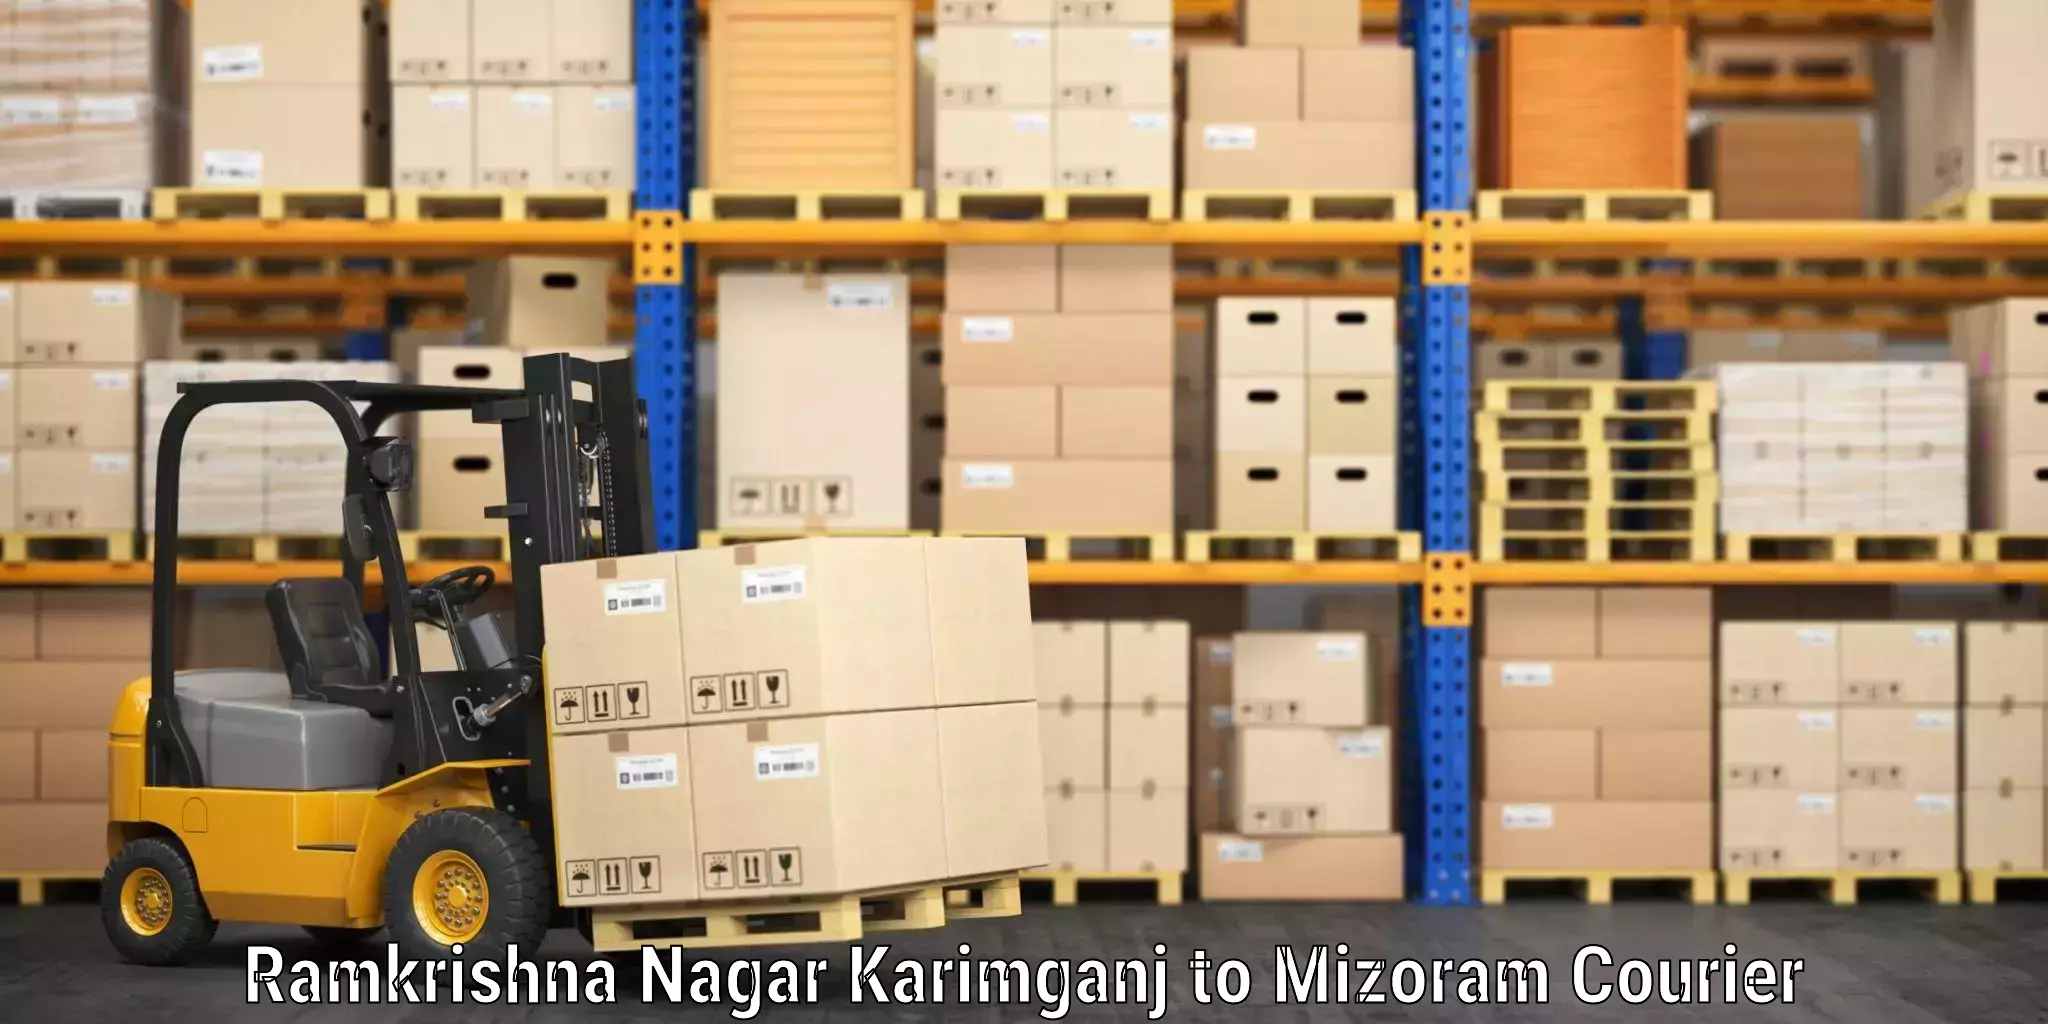 Luggage shipping specialists Ramkrishna Nagar Karimganj to Mizoram